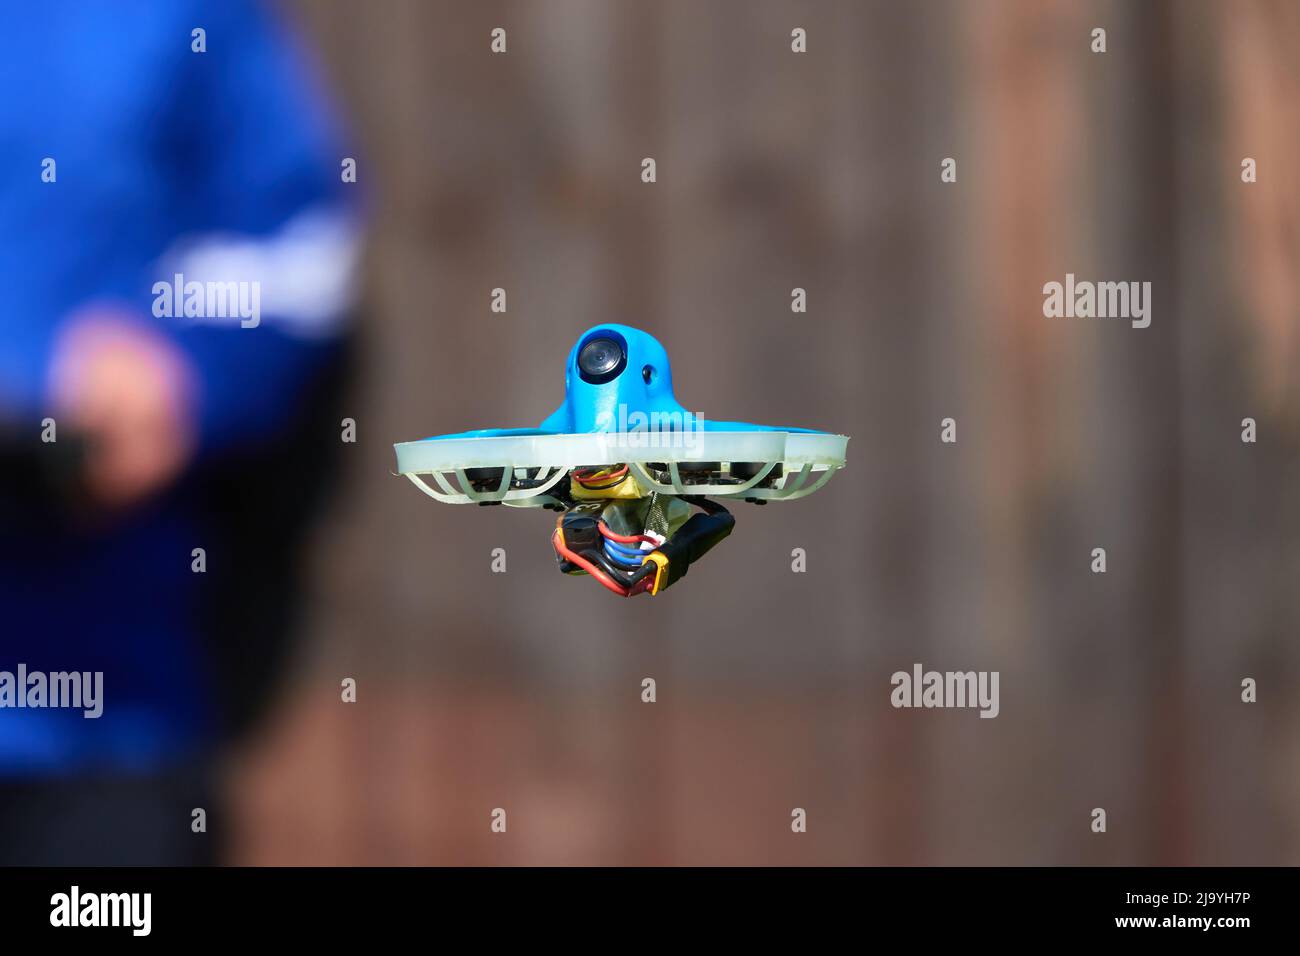 Le petit drone également la course quad en bleu est précisément contrôlée par le pilote humain, mur en marron comme fond.Allemagne. Banque D'Images